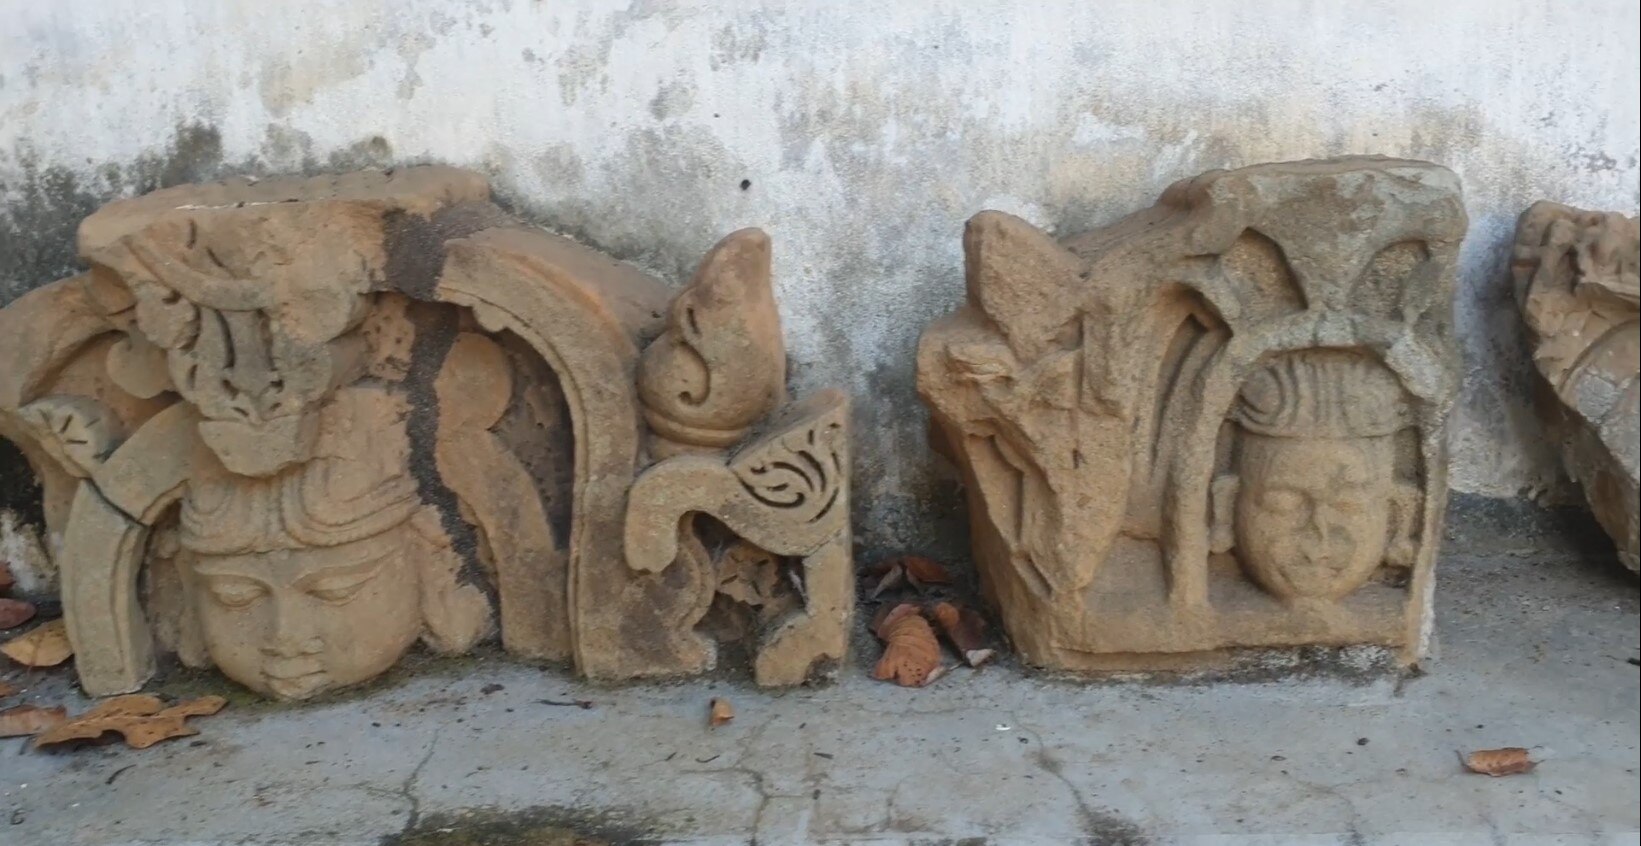 In Pics: सरगुजा के महेशपुर में खुदाई के दौरान मिले प्राचीन मूर्तियां और मंदिरों के अवशेष, देखें तस्वीरें